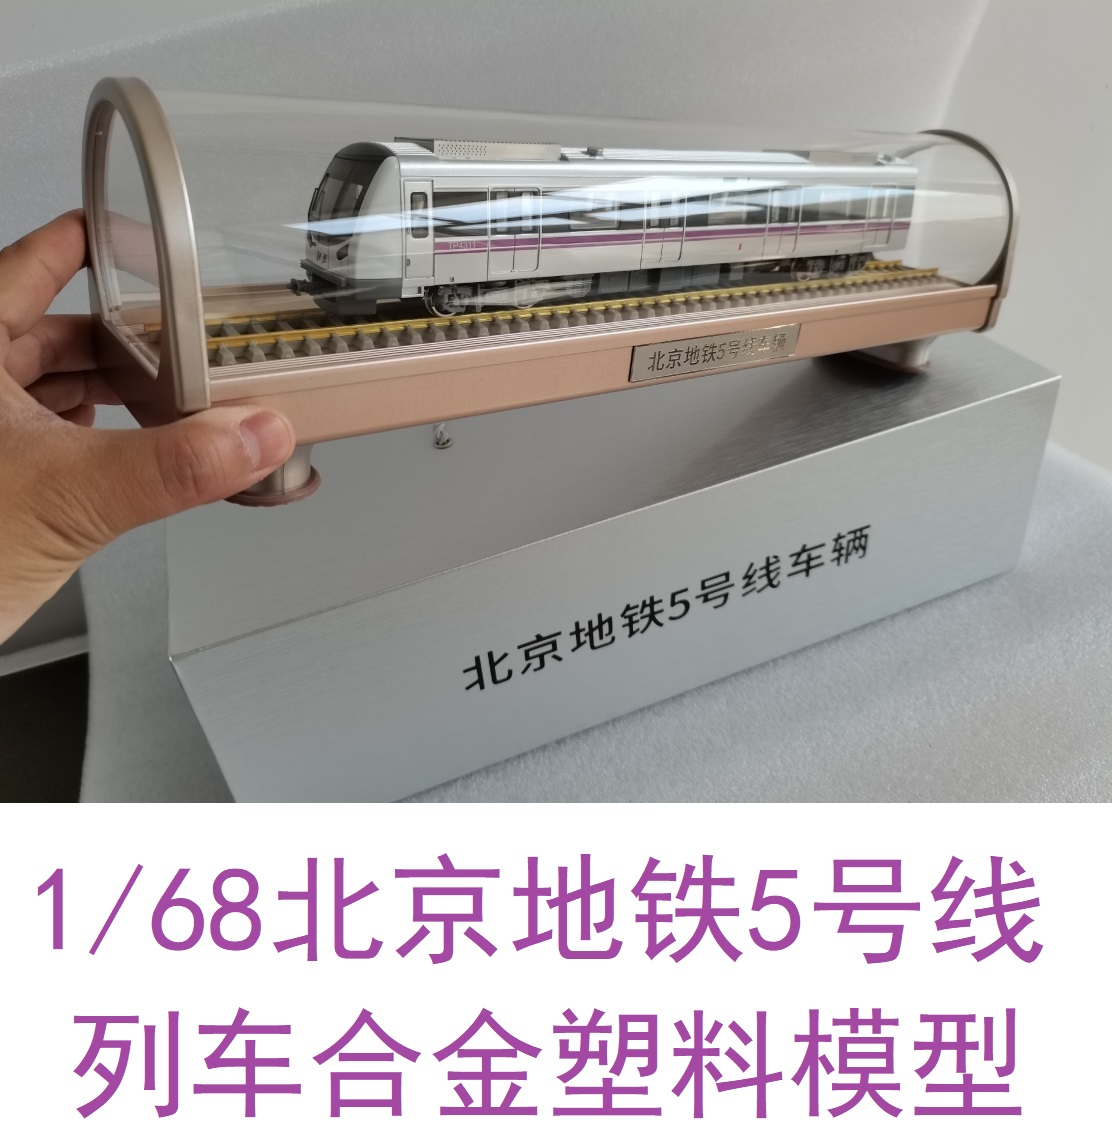 1/68比例北京地铁5号线地铁列车模型合金火车模型玩具礼品地铁